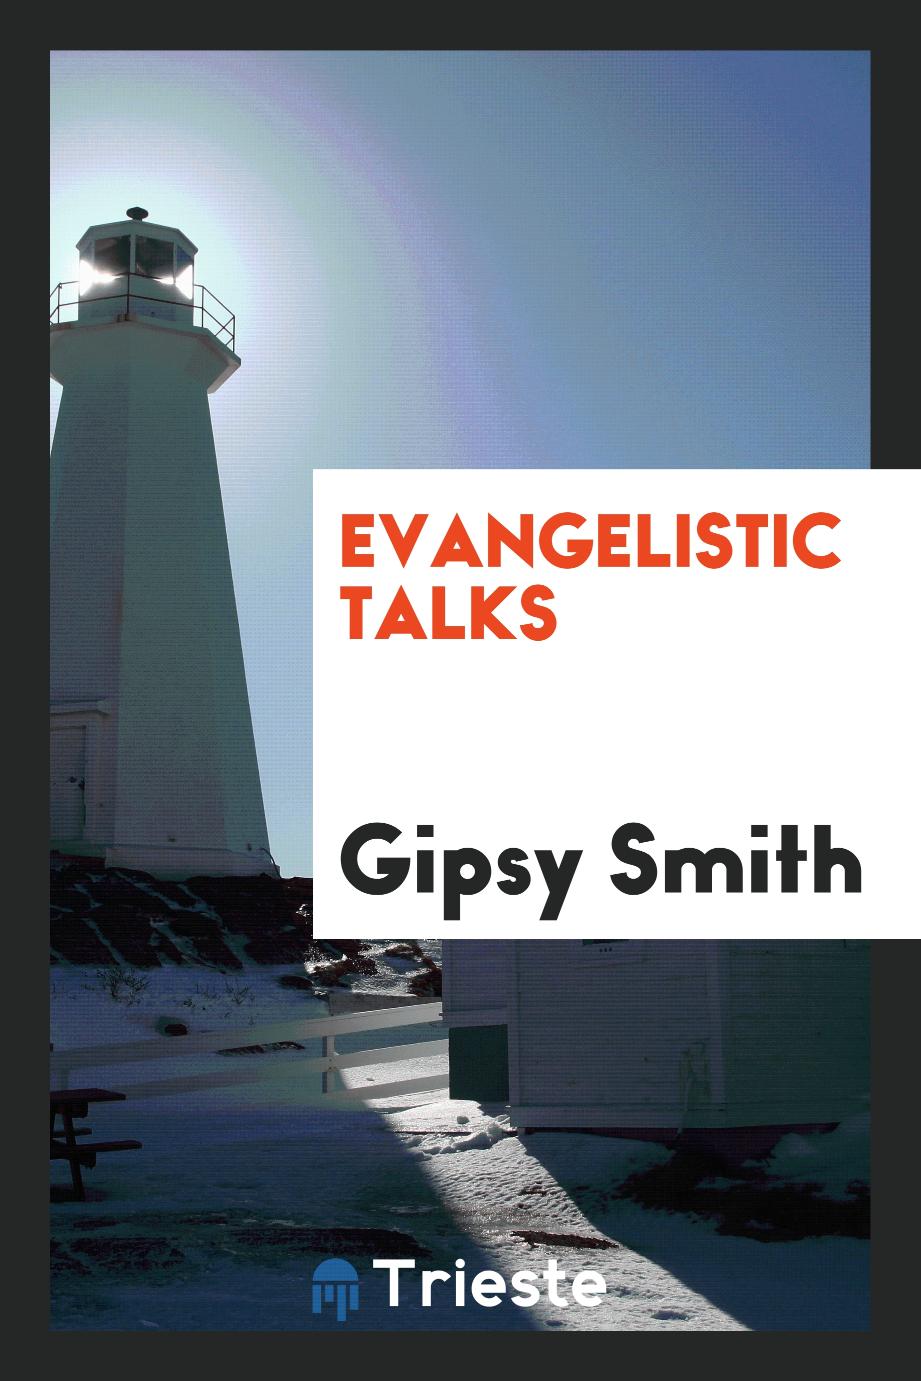 Evangelistic talks